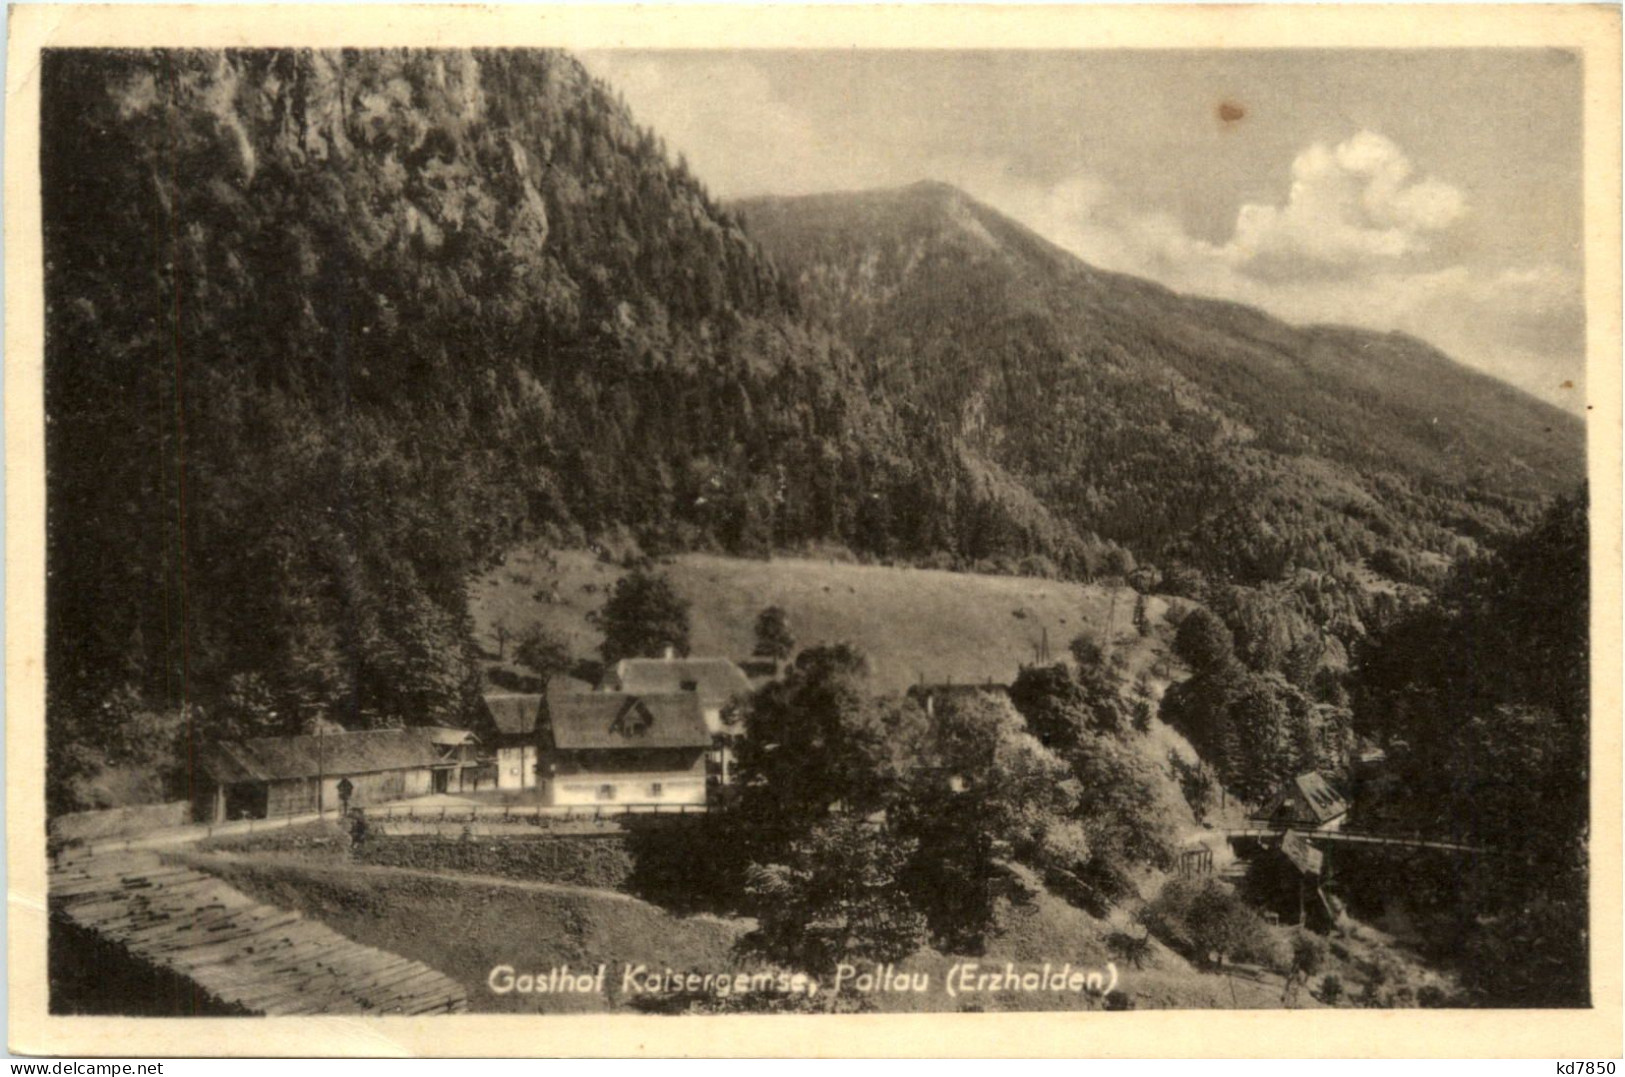 Gasthof Kaisergemse, Pallau (Erzhalden) - Liezen